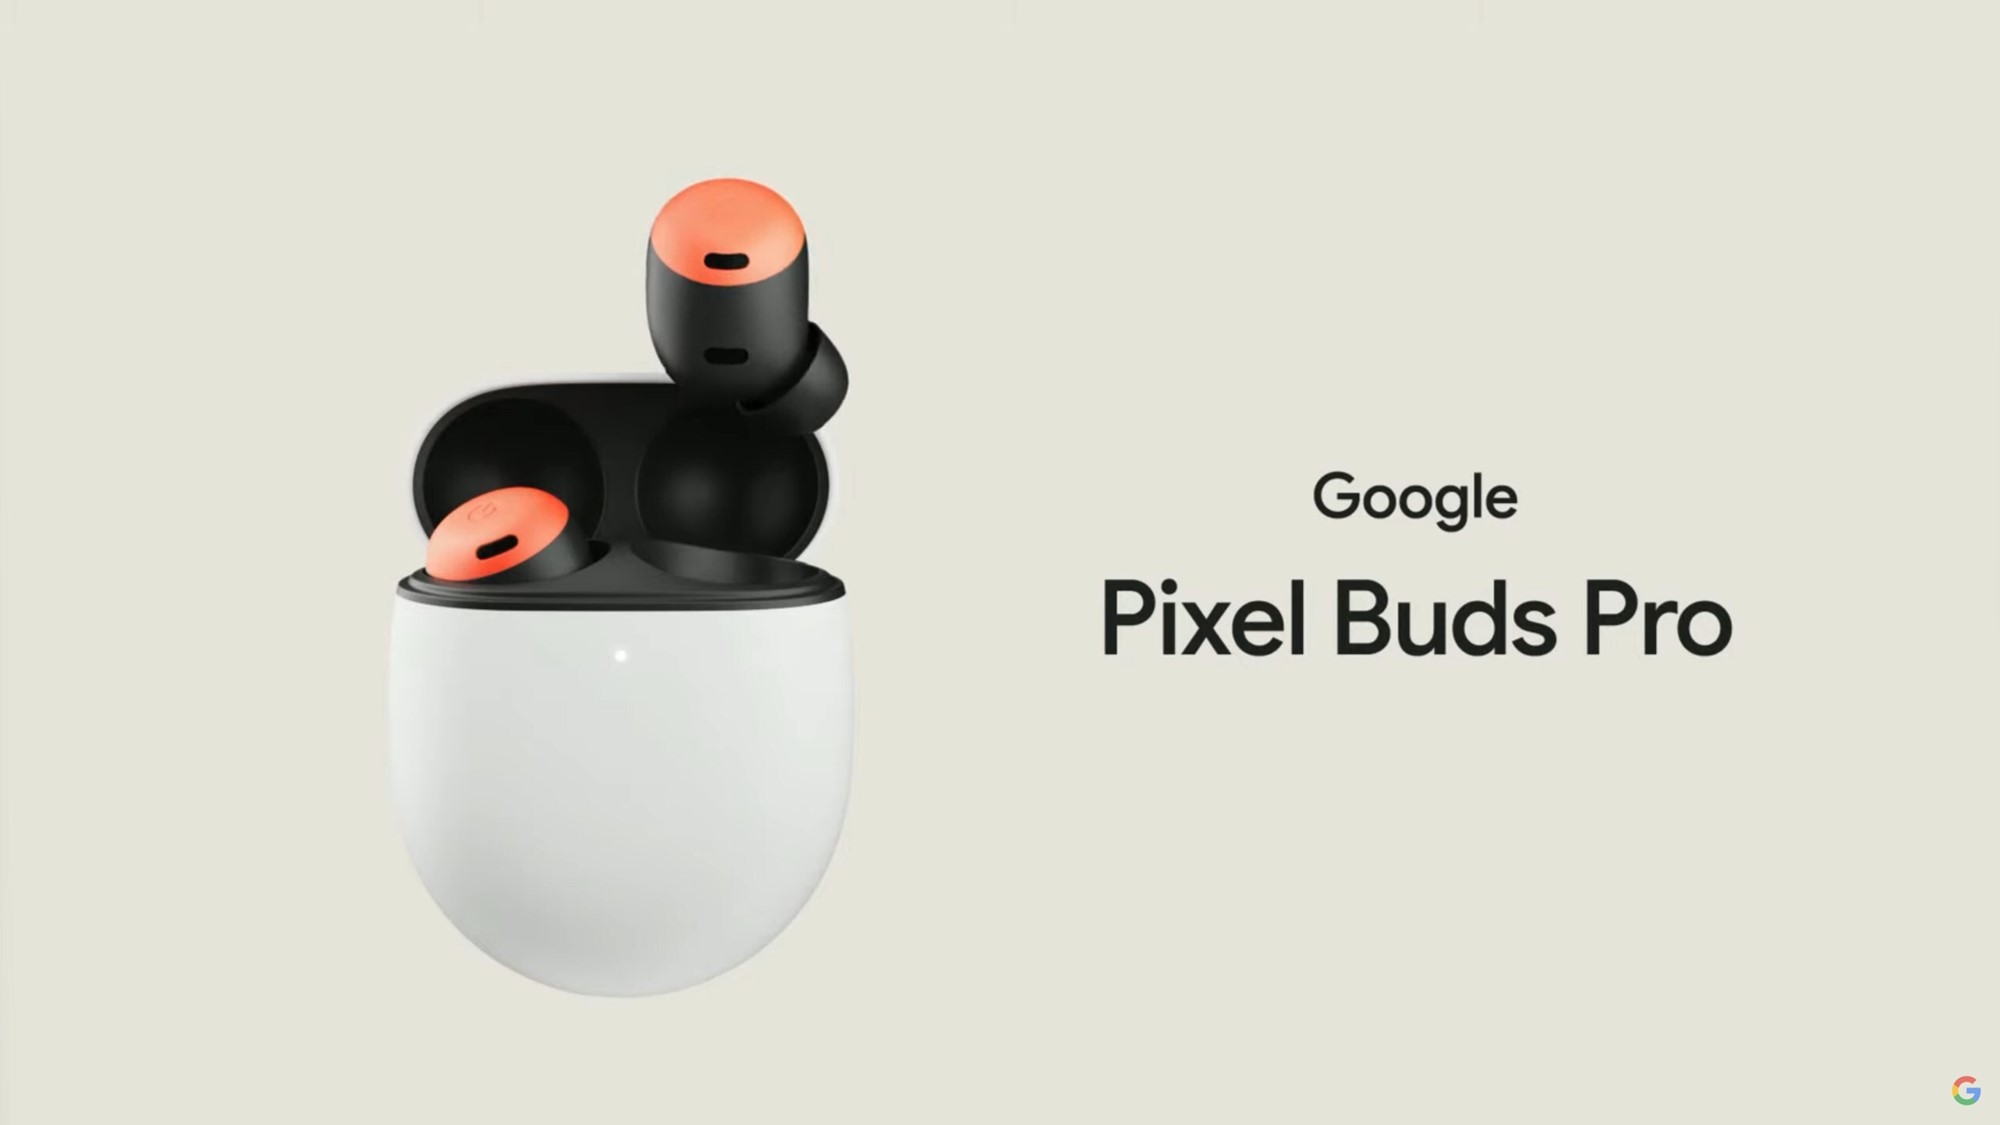 Google Pixel Buds Pro : Des écouteurs haut de gamme révélés pour 199  dollars avec ANC, multipoint Bluetooth et commutation audio automatique -   News